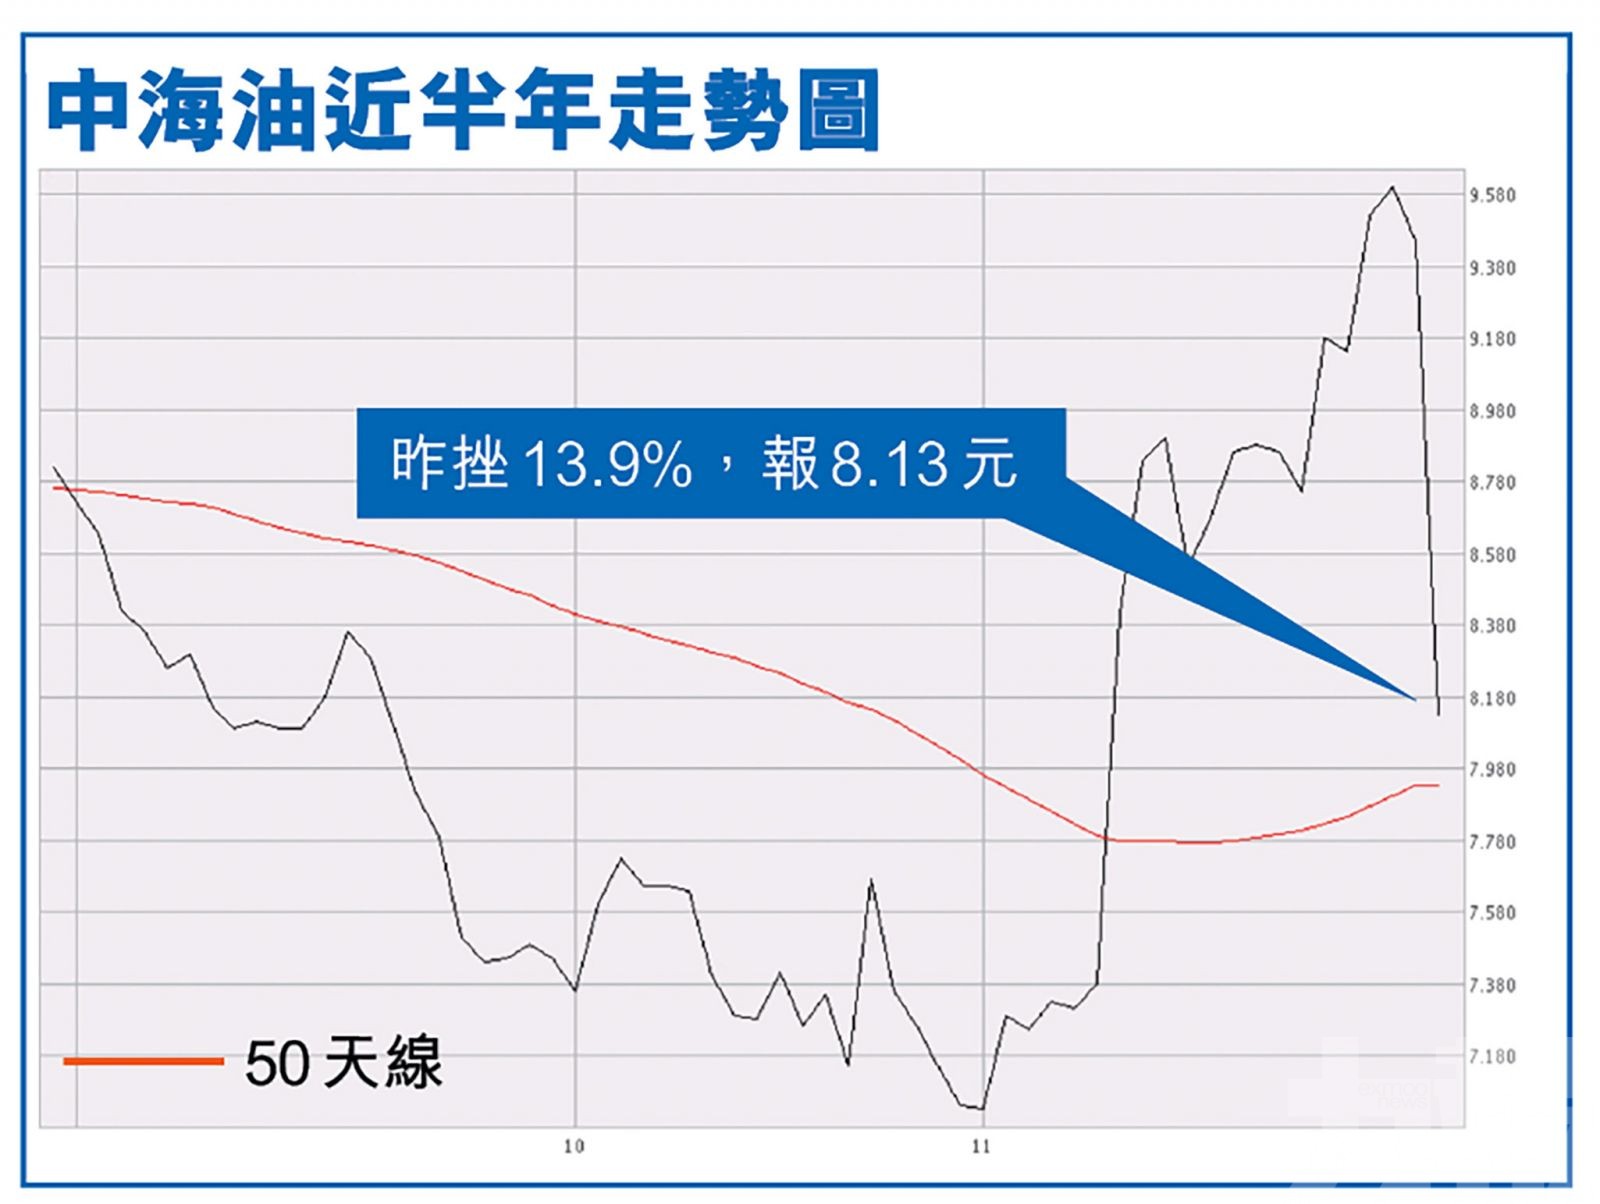 中海油大插近一成四 低油價下短期難翻身